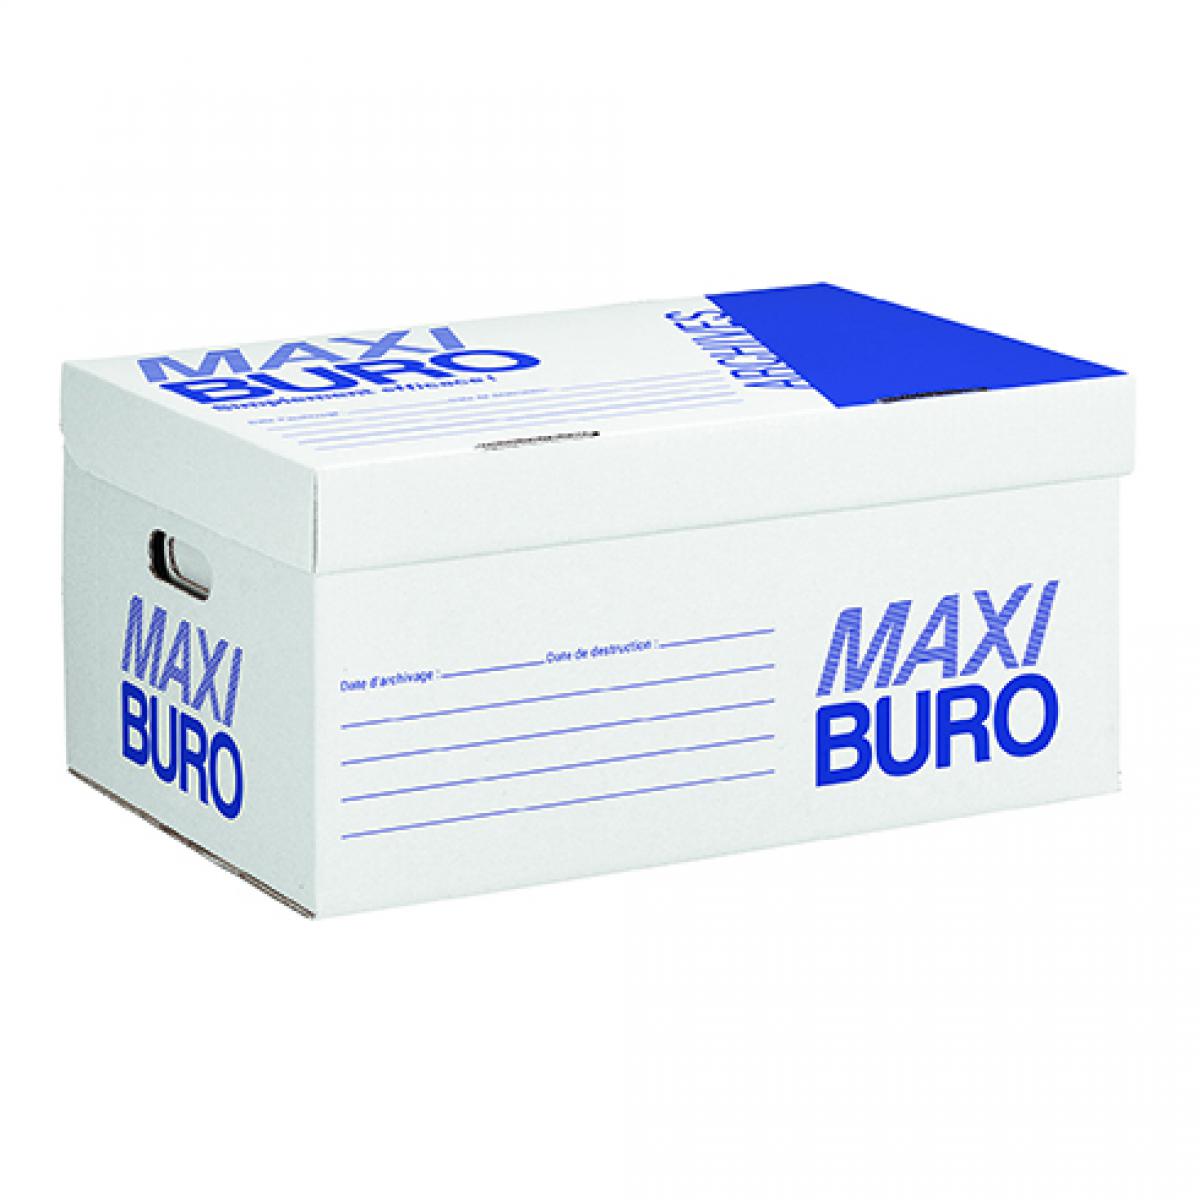 Maxiburo - Caisse à archives blanche Maxiburo H 27 x L 55 x P 36 cm - Lot de 10 - Accessoires Bureau